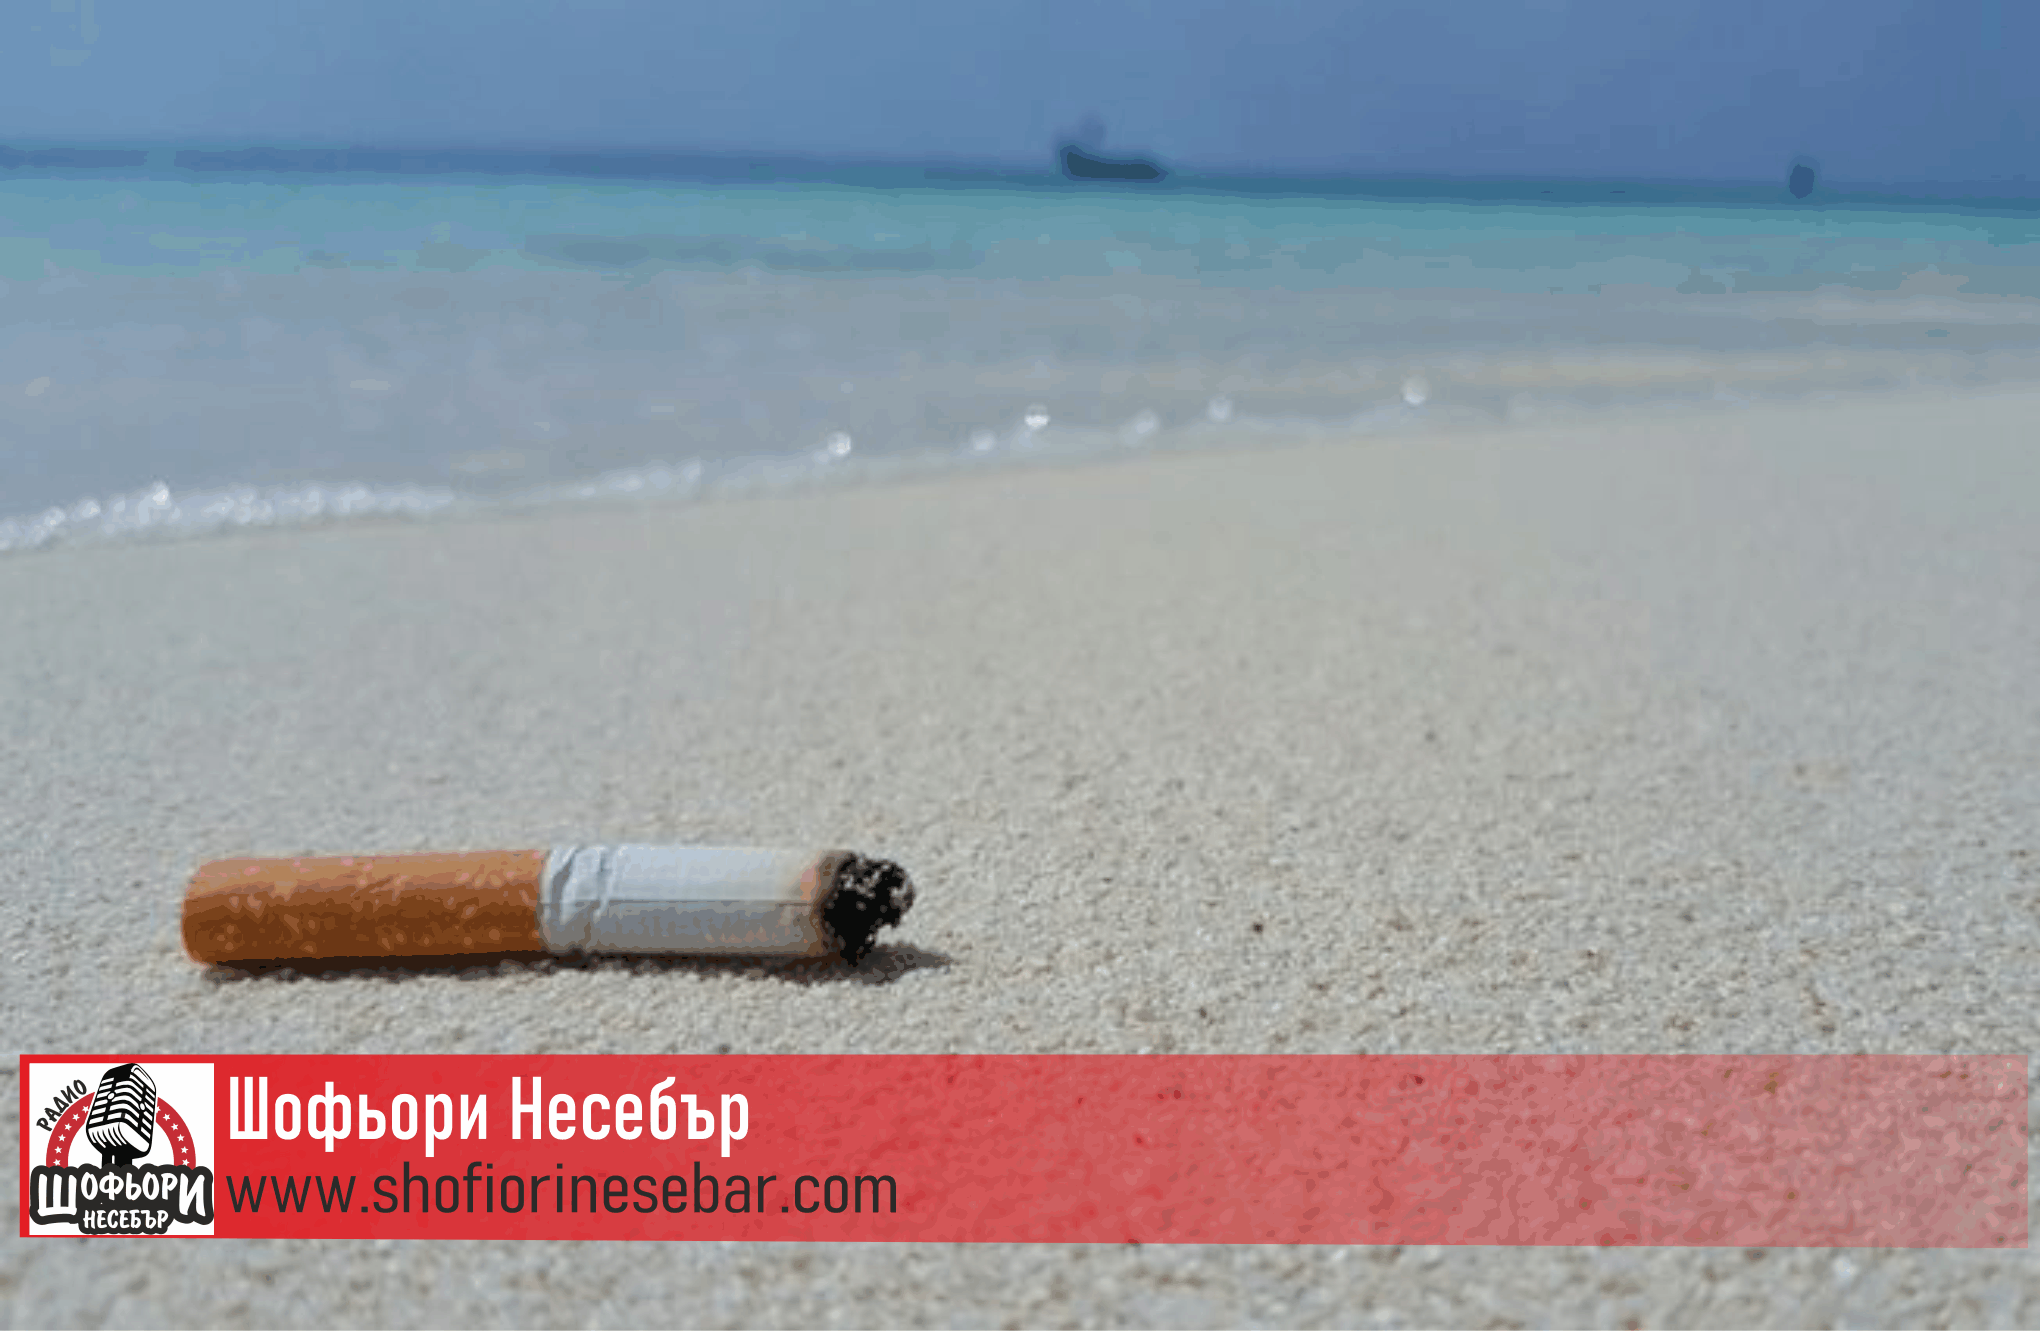 Първи гръцки плаж забрани тютюнопушенето